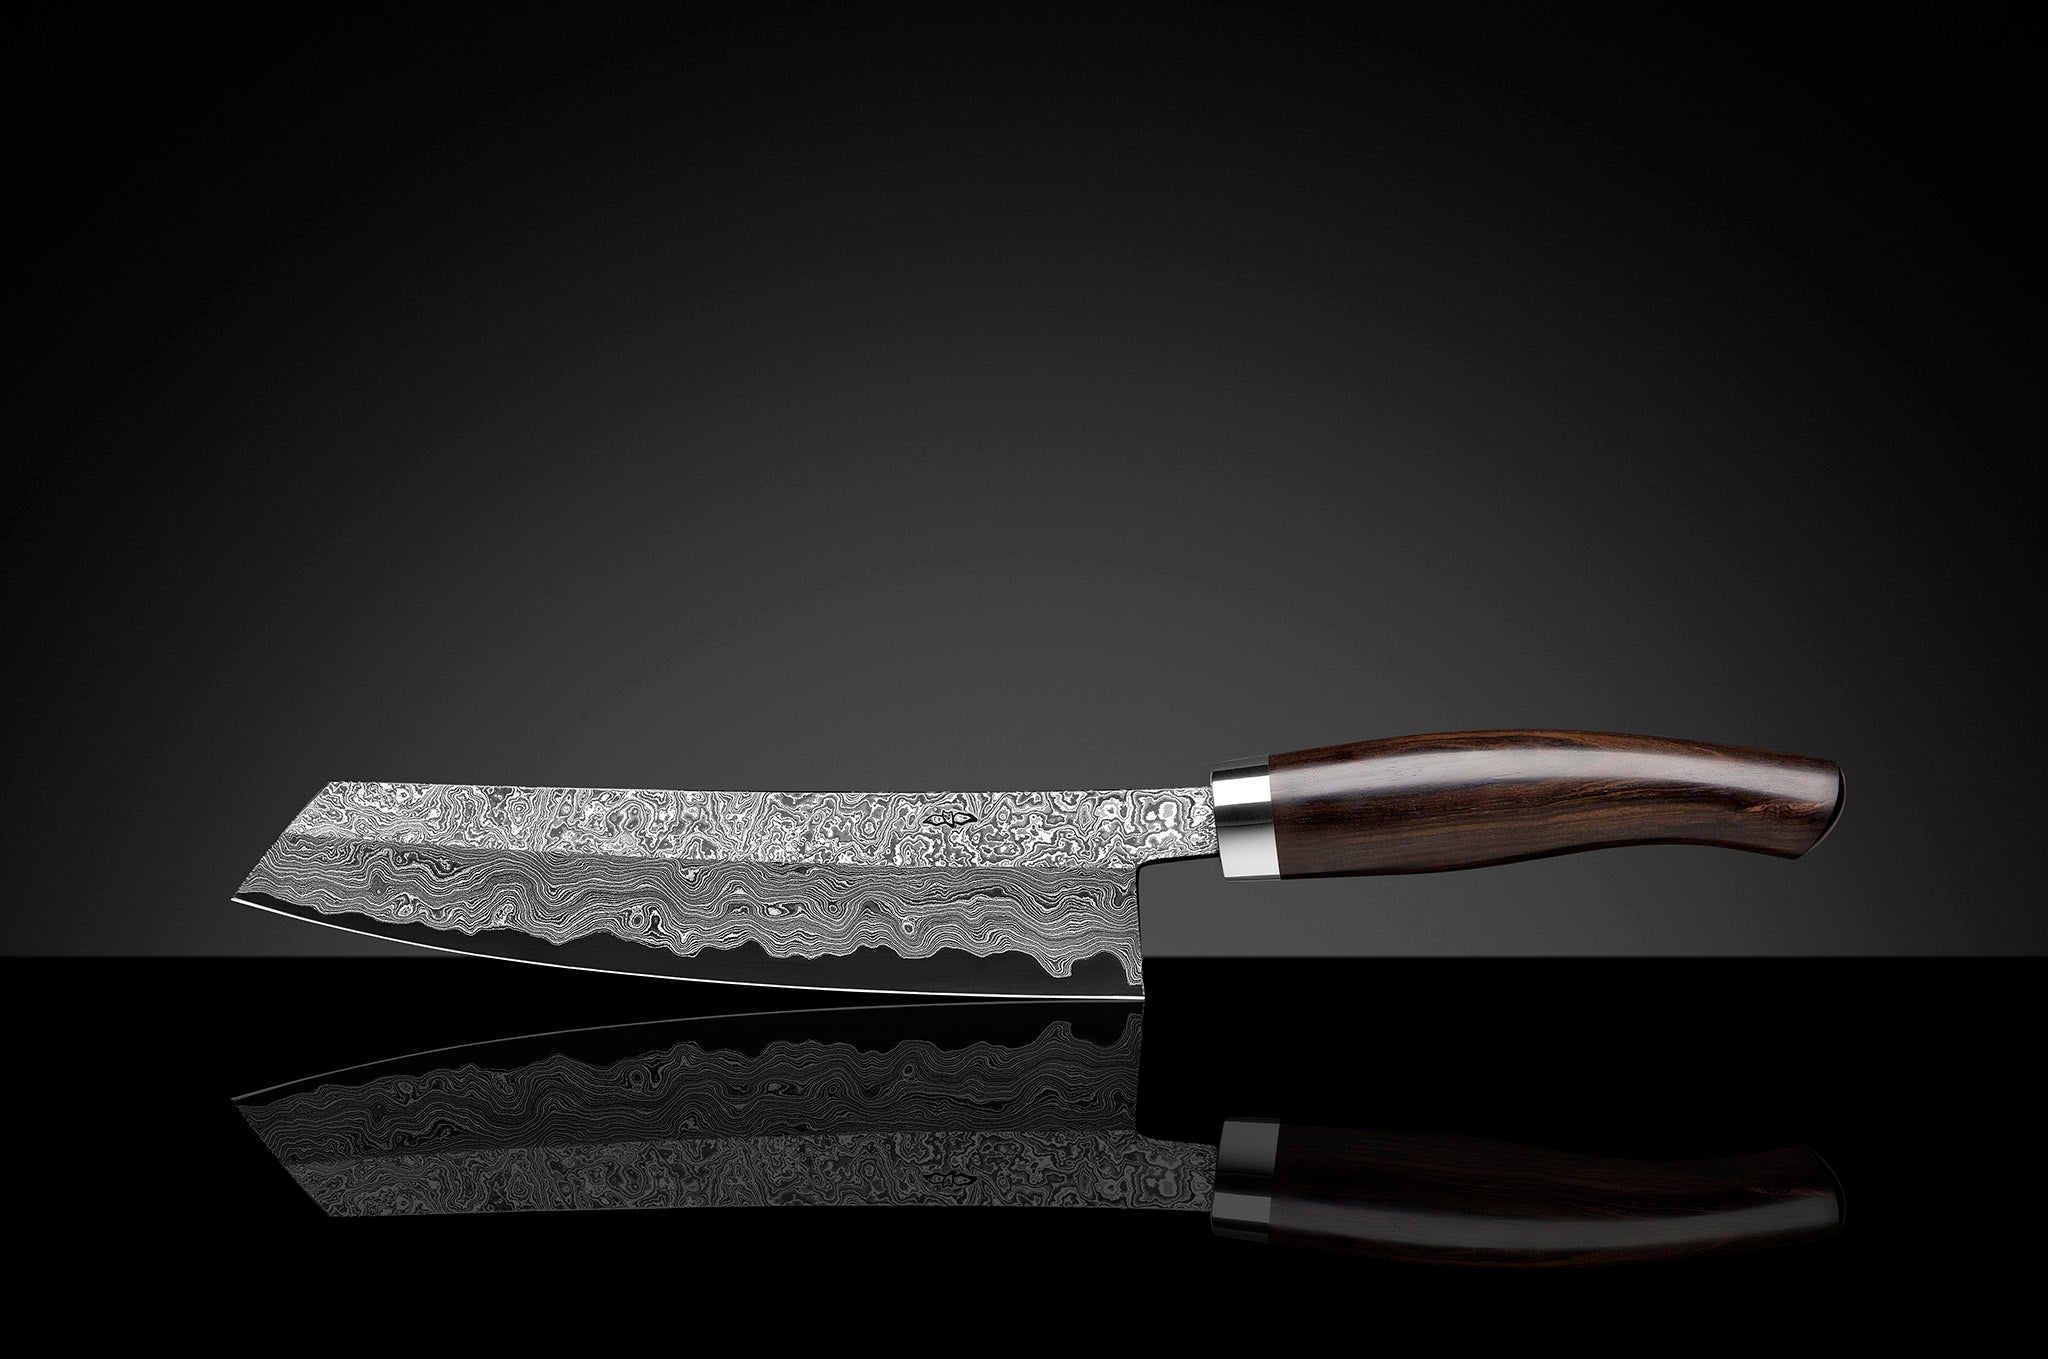 Kochmesser Exklusiv C90 von Nesmuk 180 mm mit Klinge aus handgeschmiedetem wildem Damast